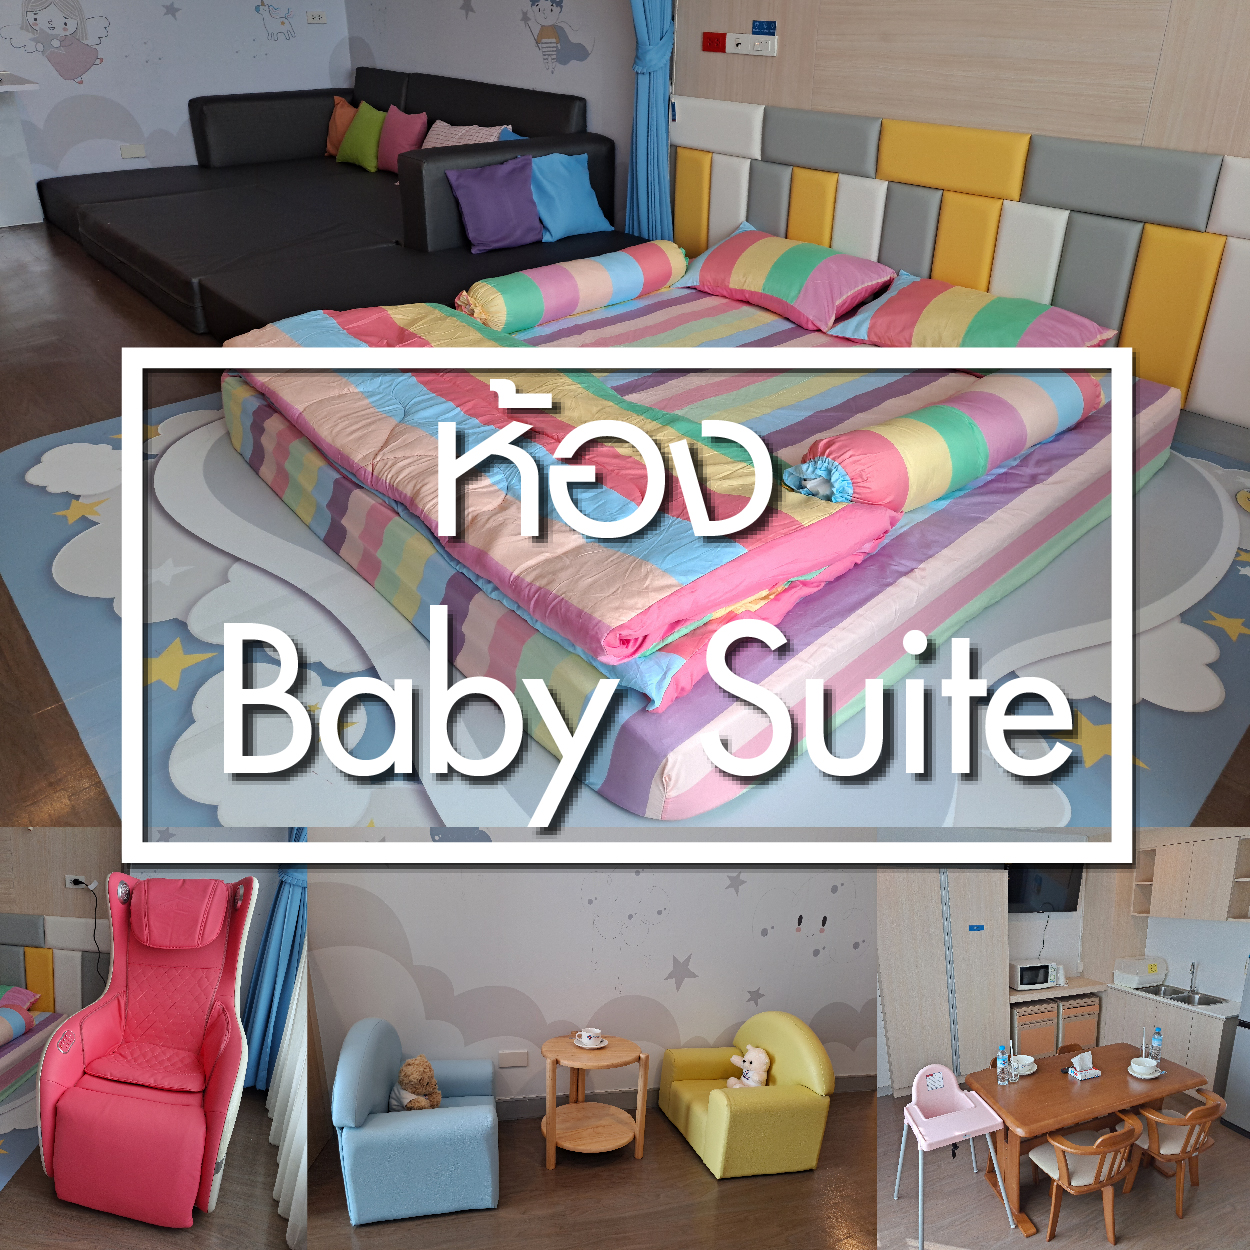 ห้อง Baby Suite - ห้องพักผู้ป่วยใน - โรงพยาบาลรวมแพทย์ฉะเชิงเทรา